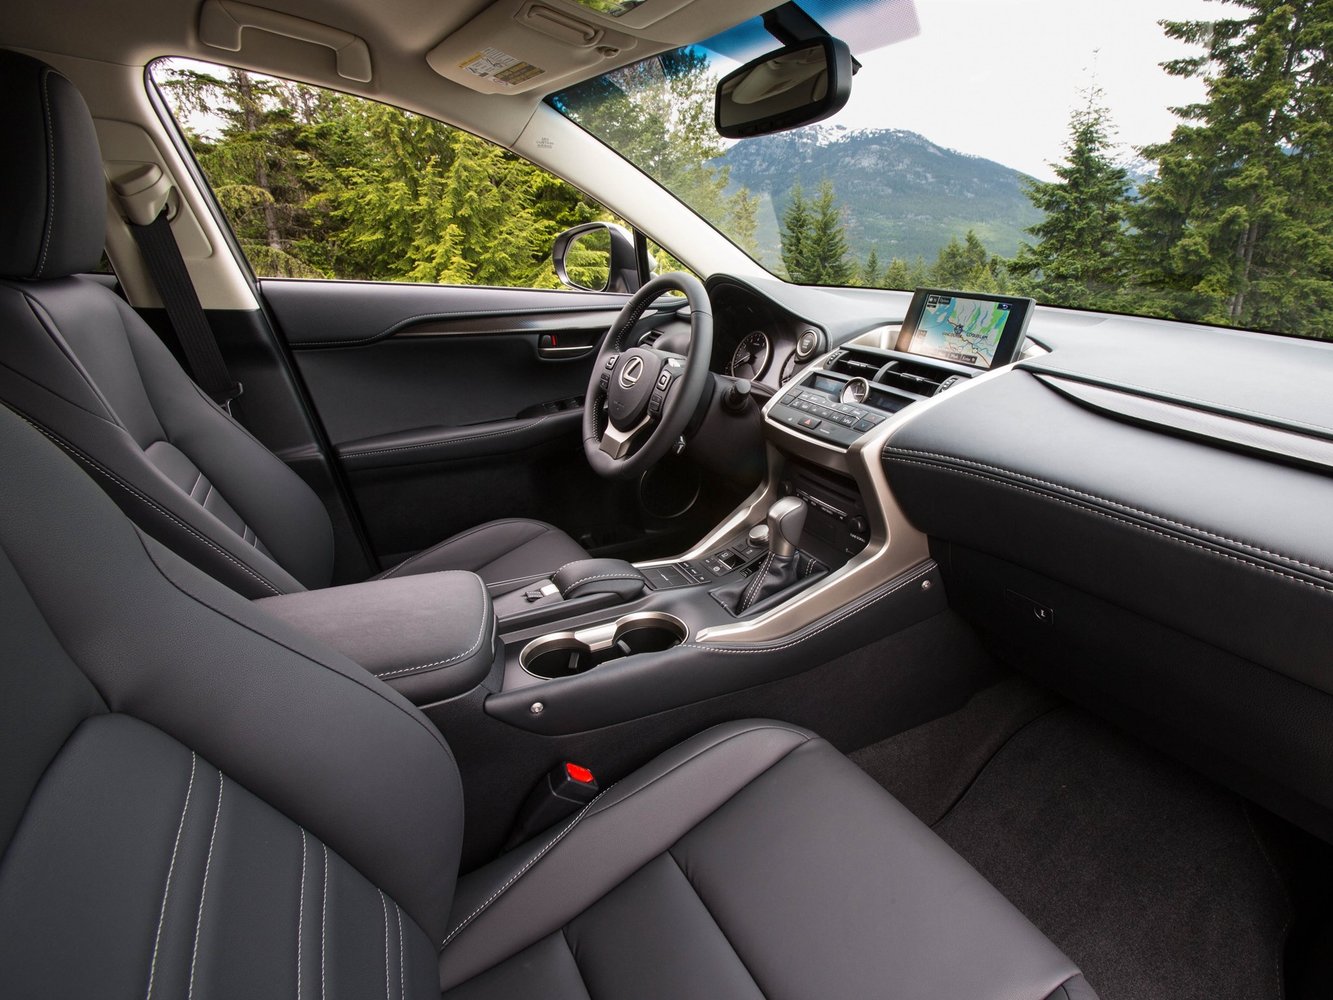 кроссовер Lexus NX 2014 - 2016г выпуска модификация F Sport Premium 2.5 CVT (155 л.с.) 4×4